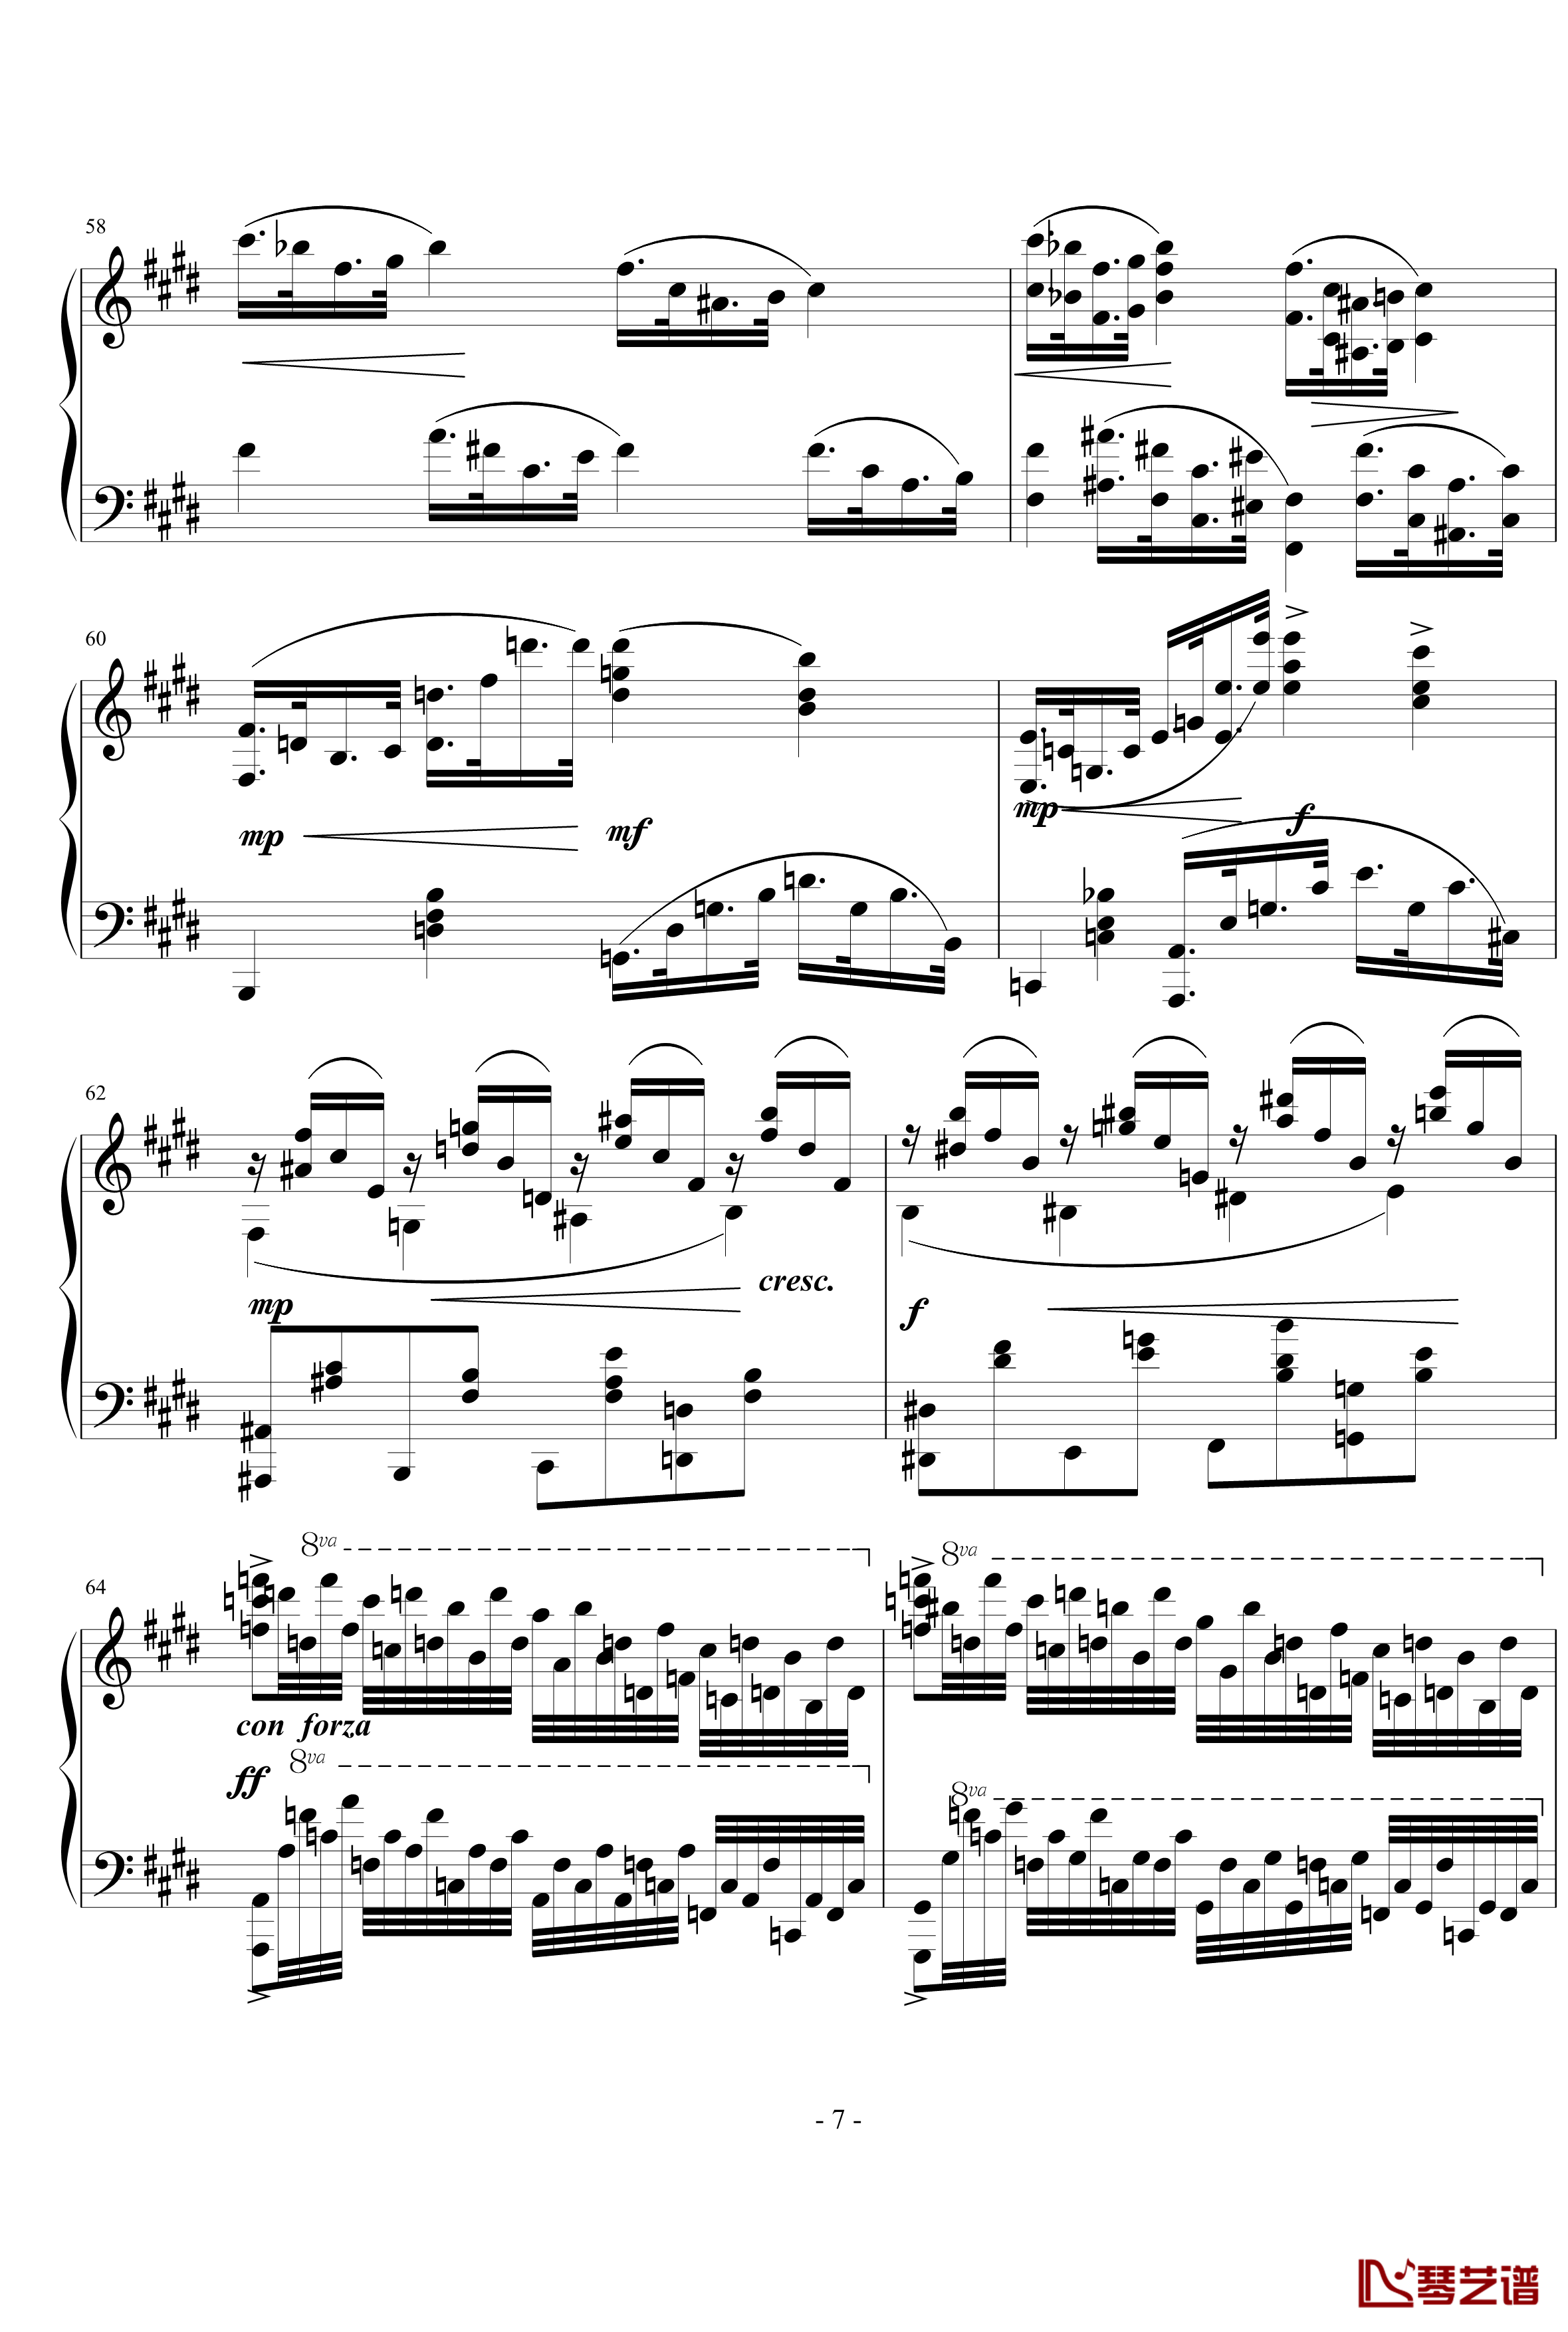 烂大俗奏鸣曲钢琴谱-1乐章-nyride7